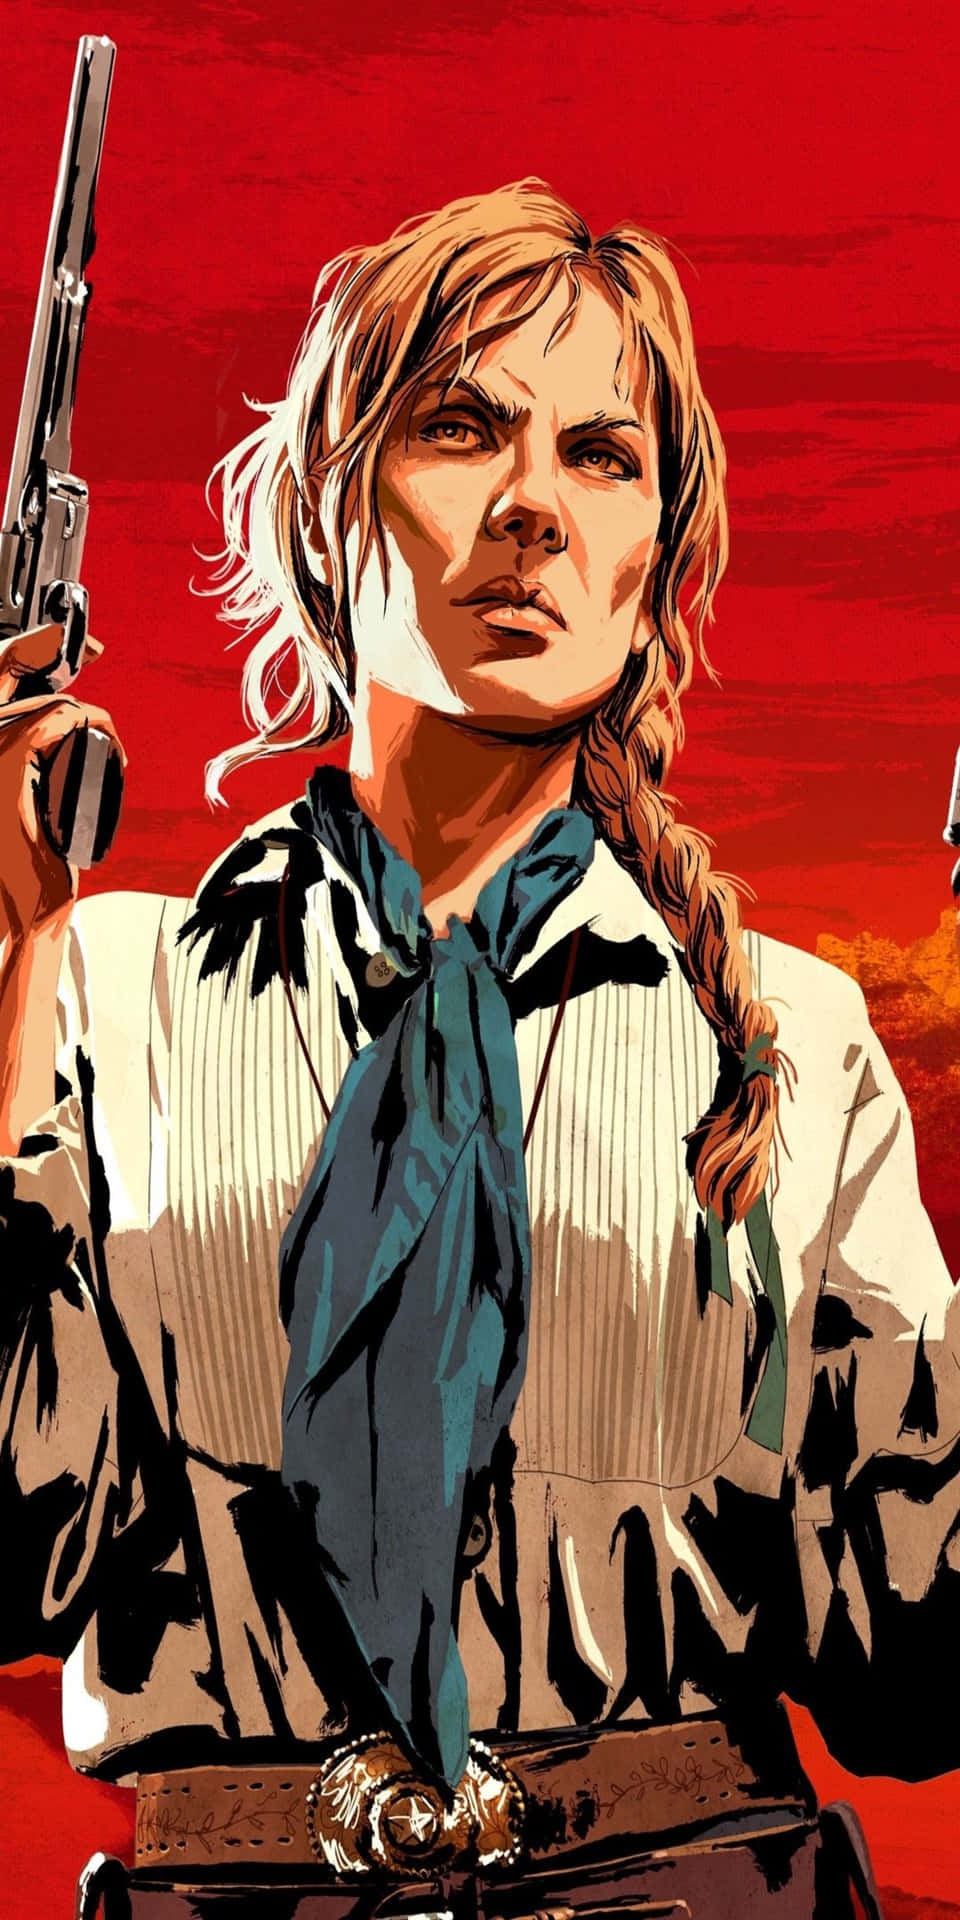 Fondode Pantalla Del Pixel 3 De Red Dead Redemption 2 Con El Poster Rojo De Sadie Adler.